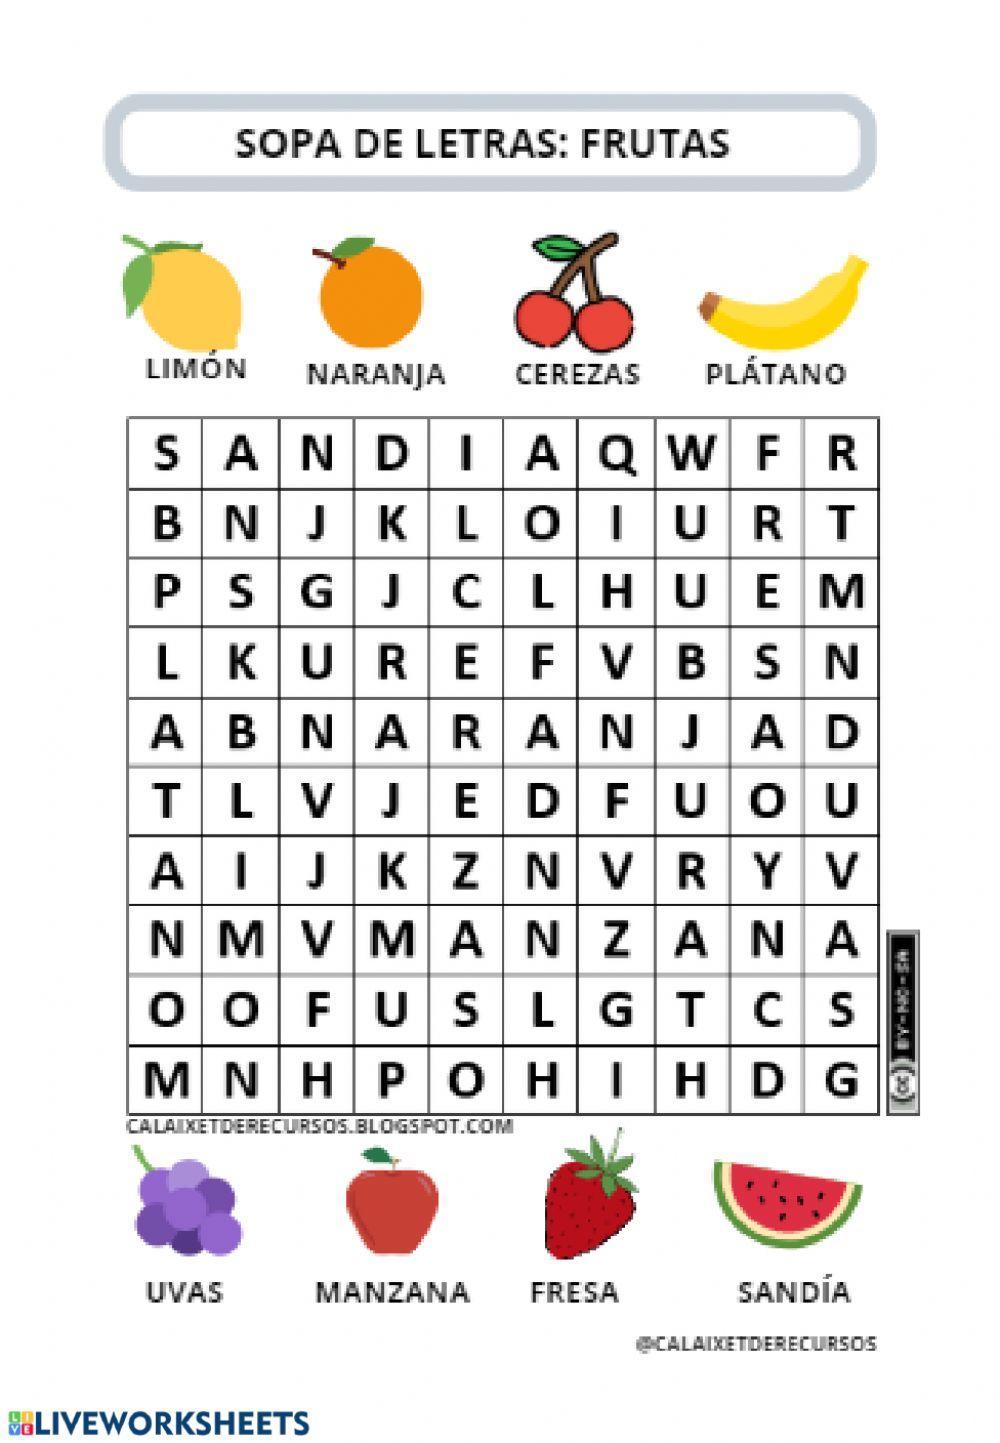 Sopa de letras frutas